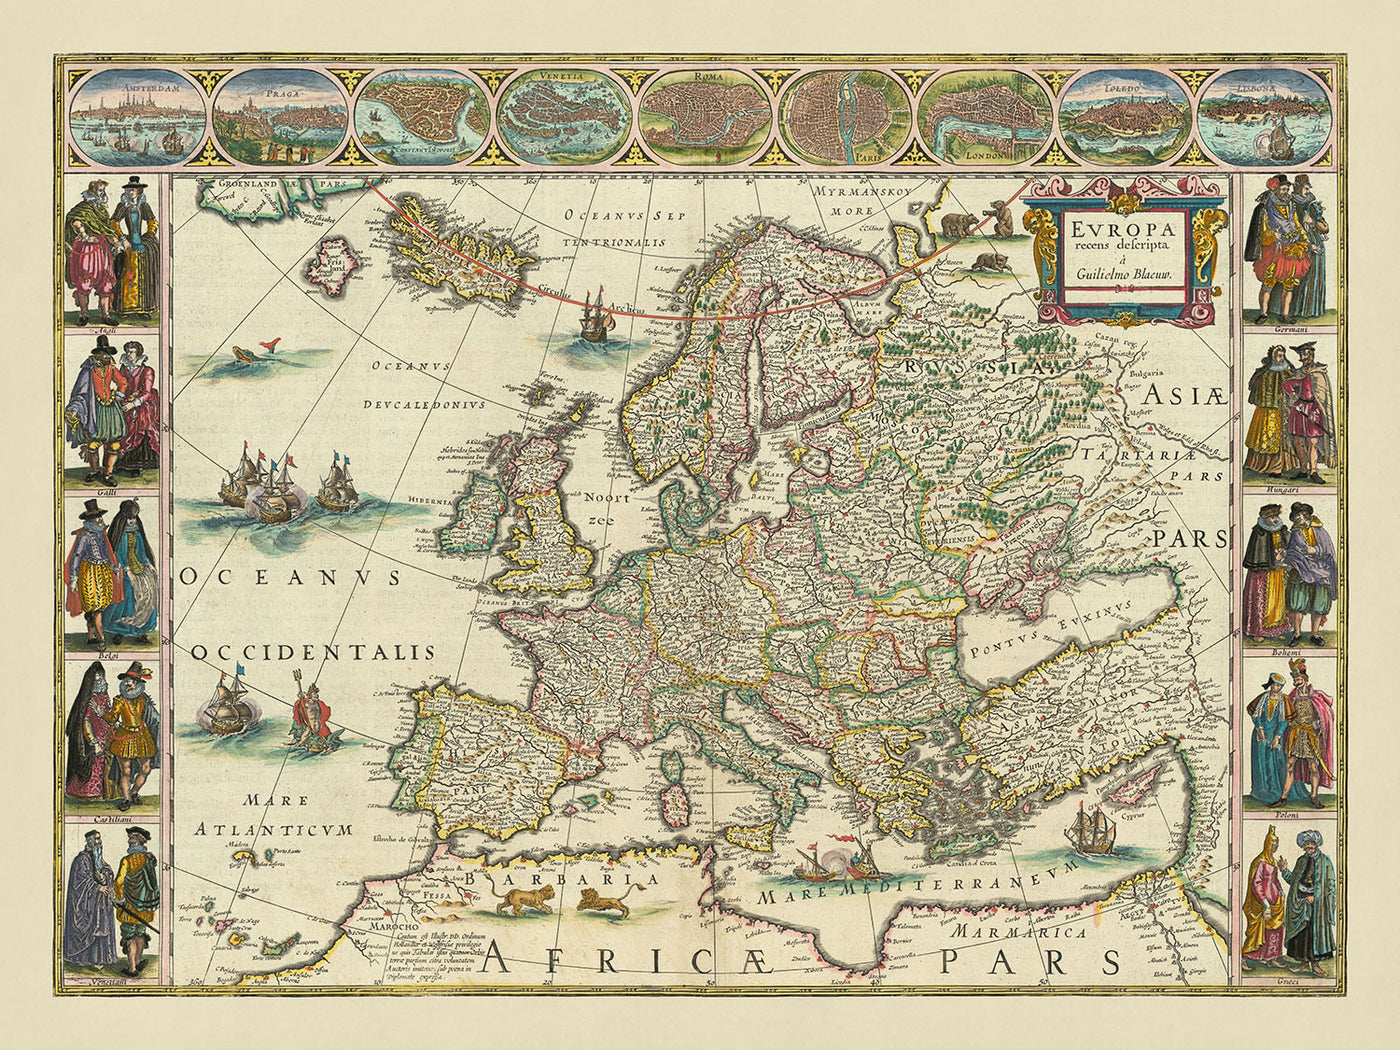 Alte Europakarte von Blaeu, 1630: Reich verziert, kulturelle Illustrationen, mythische Elemente